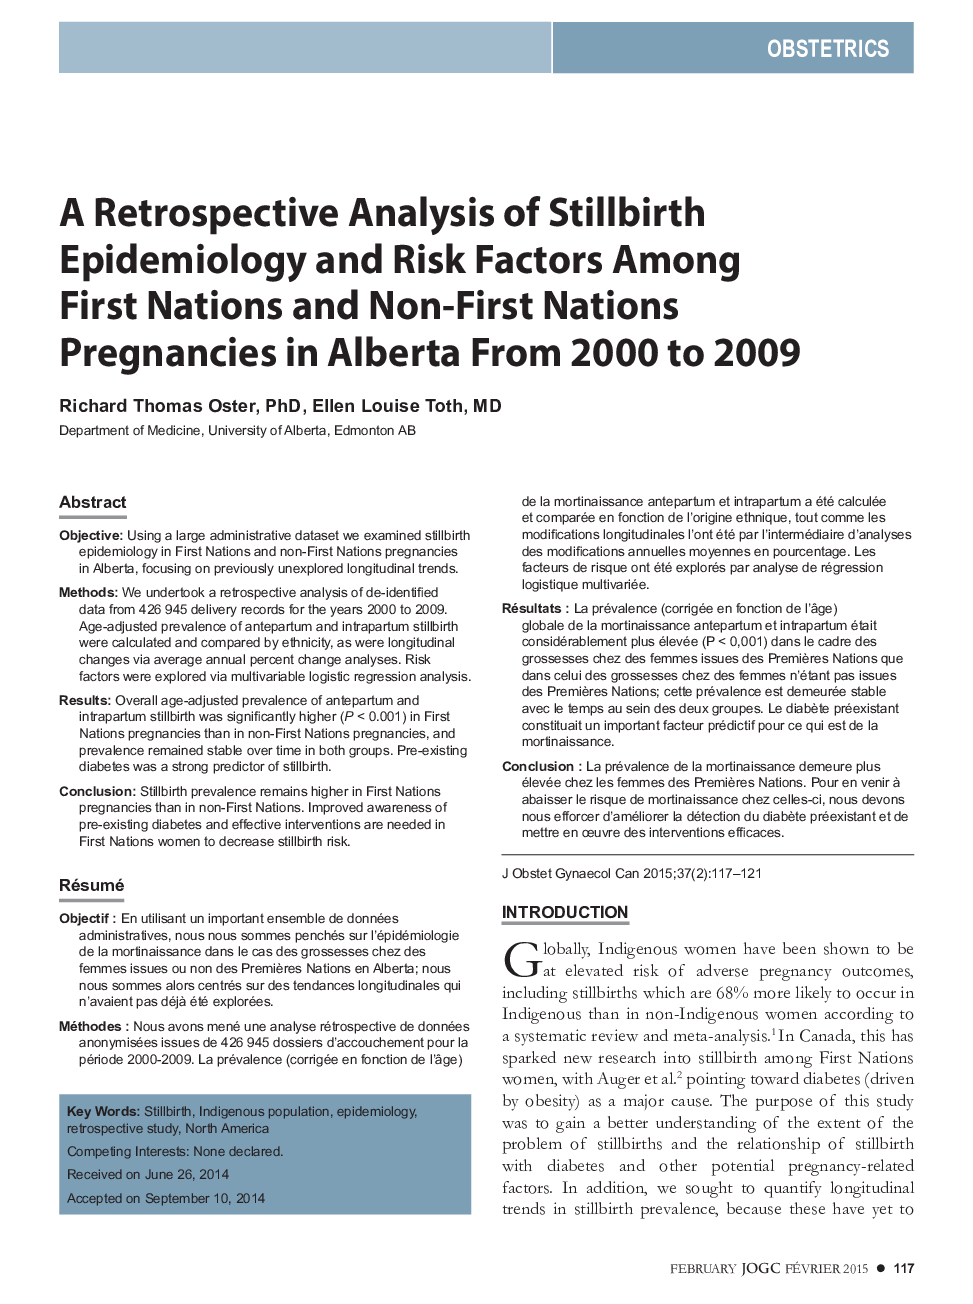 تحلیلی یکپارچهسازی اپیدمیولوژیک و عوامل خطرزای در میان اهداکنندگان ملل متحد و غیردولتی در آلبرتا از 2000 تا 2009 